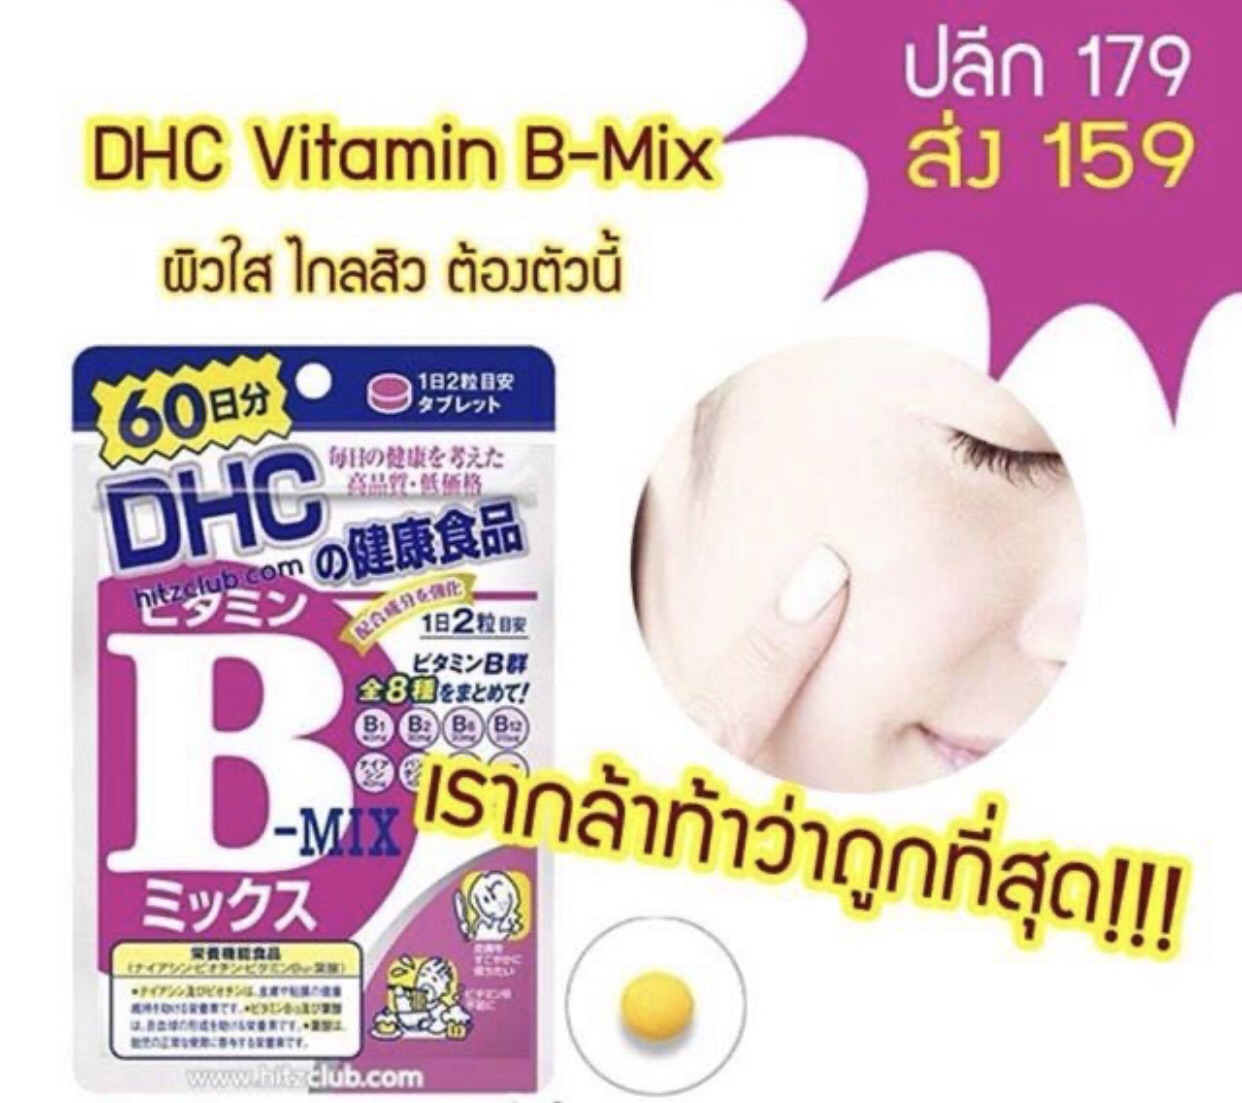 Dhc vitamin b-mix